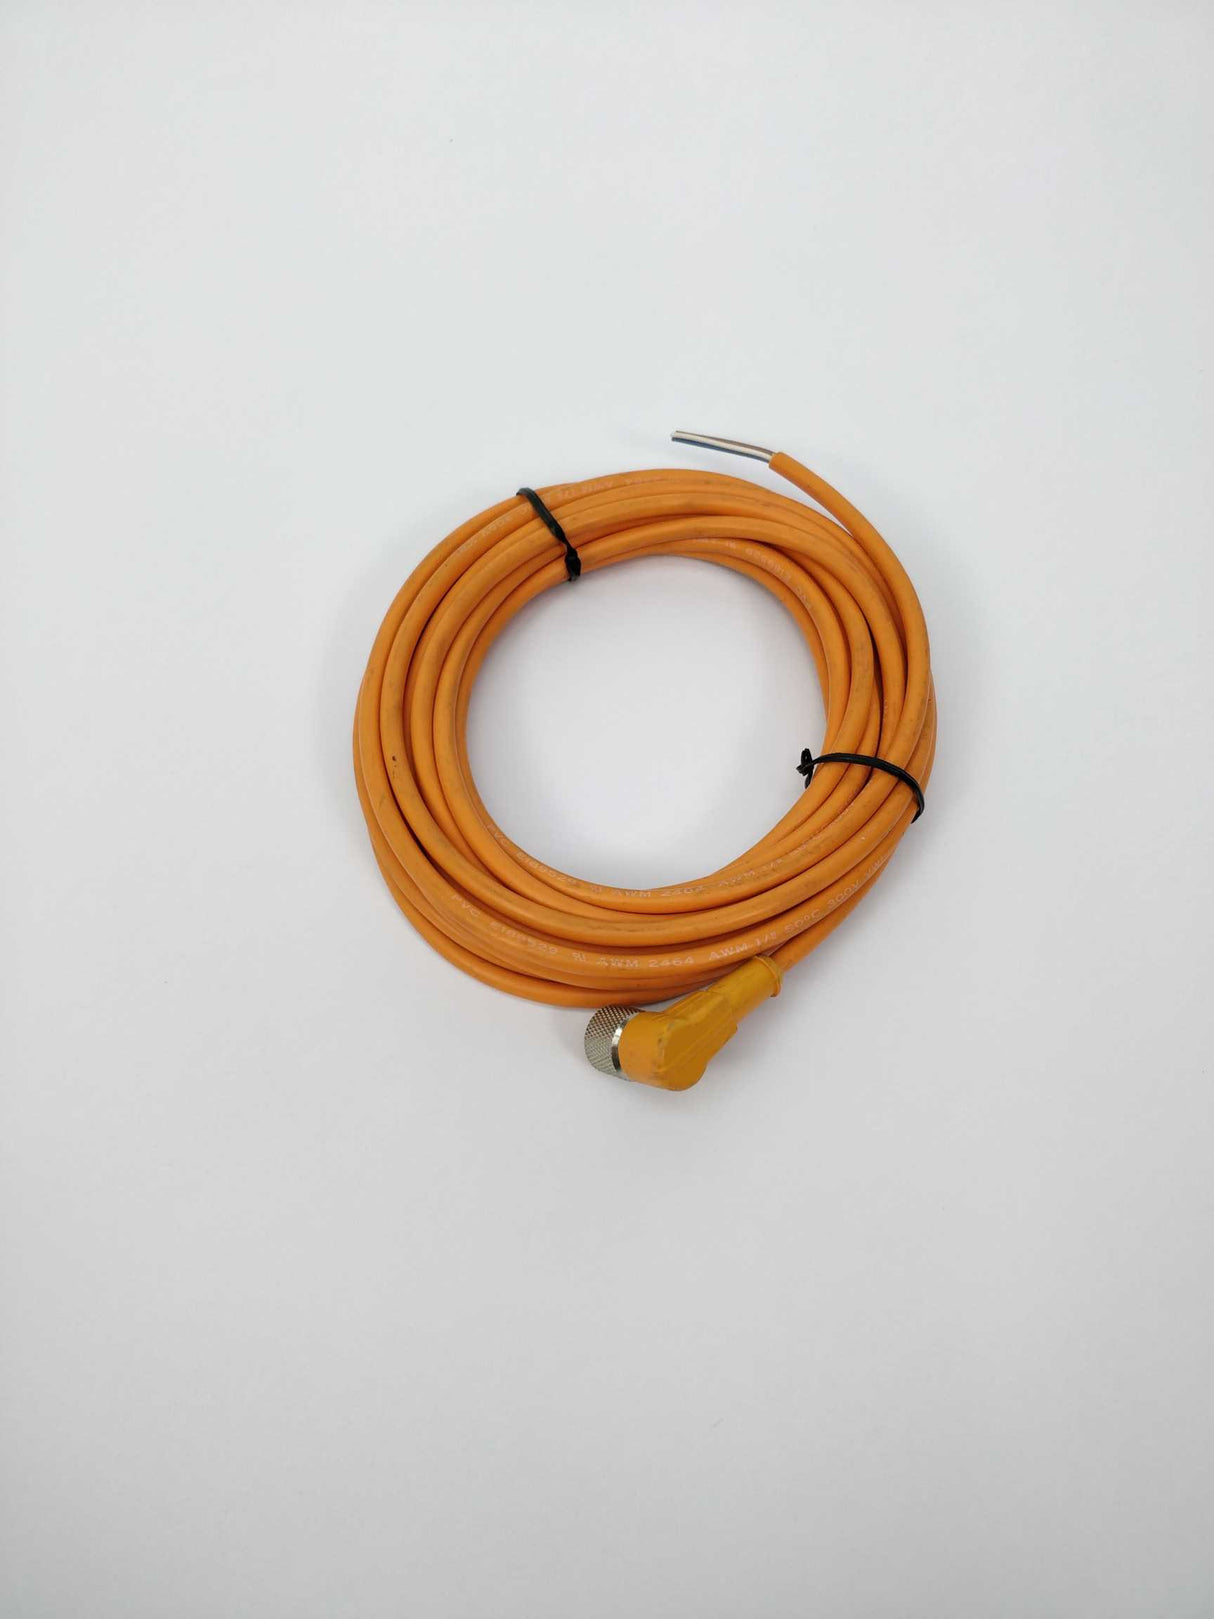 SICK DOL-1204-W05M  Plug Connector